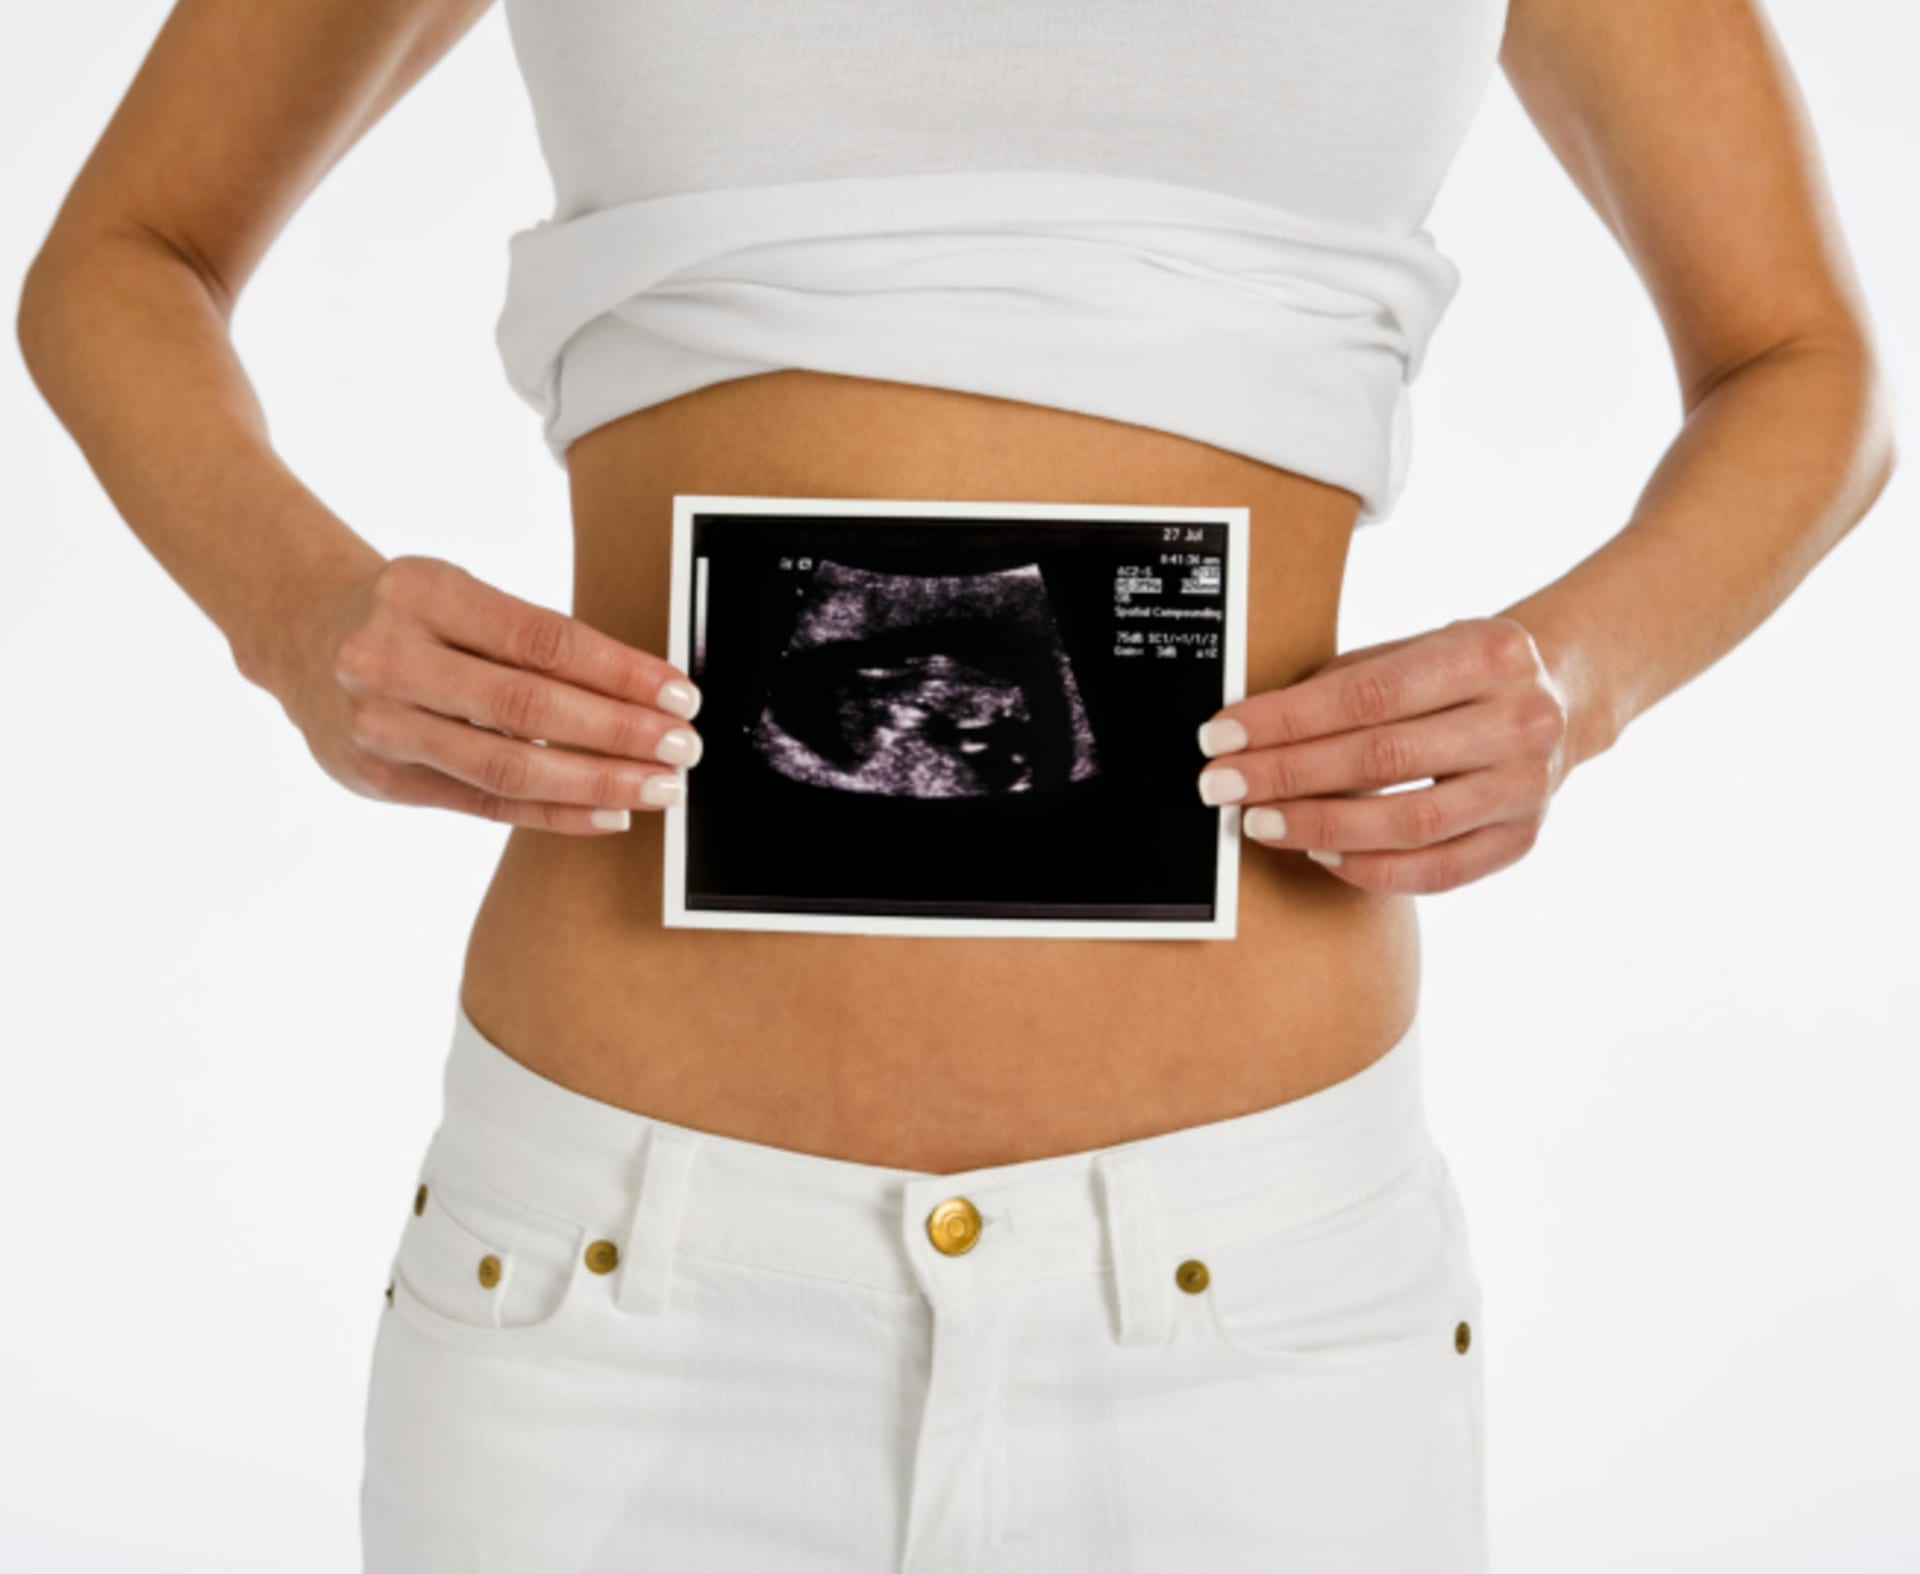 Že máte cystu většinou zjistí až gynekolog při ultrazvuku